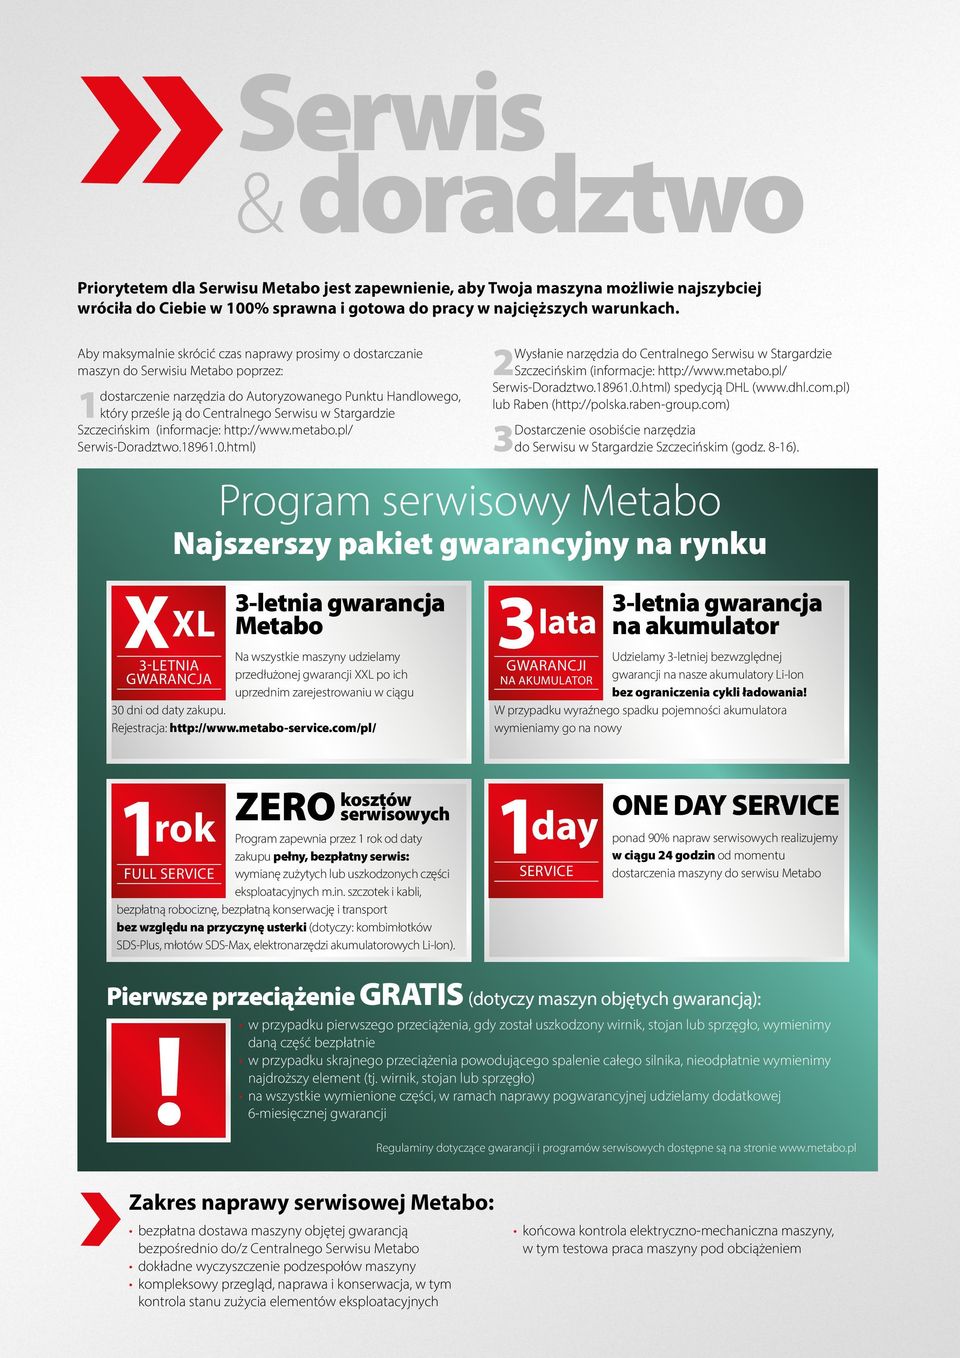 Aby maksymalnie skrócić czas naprawy prosimy o dostarczanie maszyn do Serwisiu Metabo poprzez: 2 dostarczenie narzędzia do Autoryzowanego Punktu Handlowego, który prześle ją do Centralnego Serwisu w